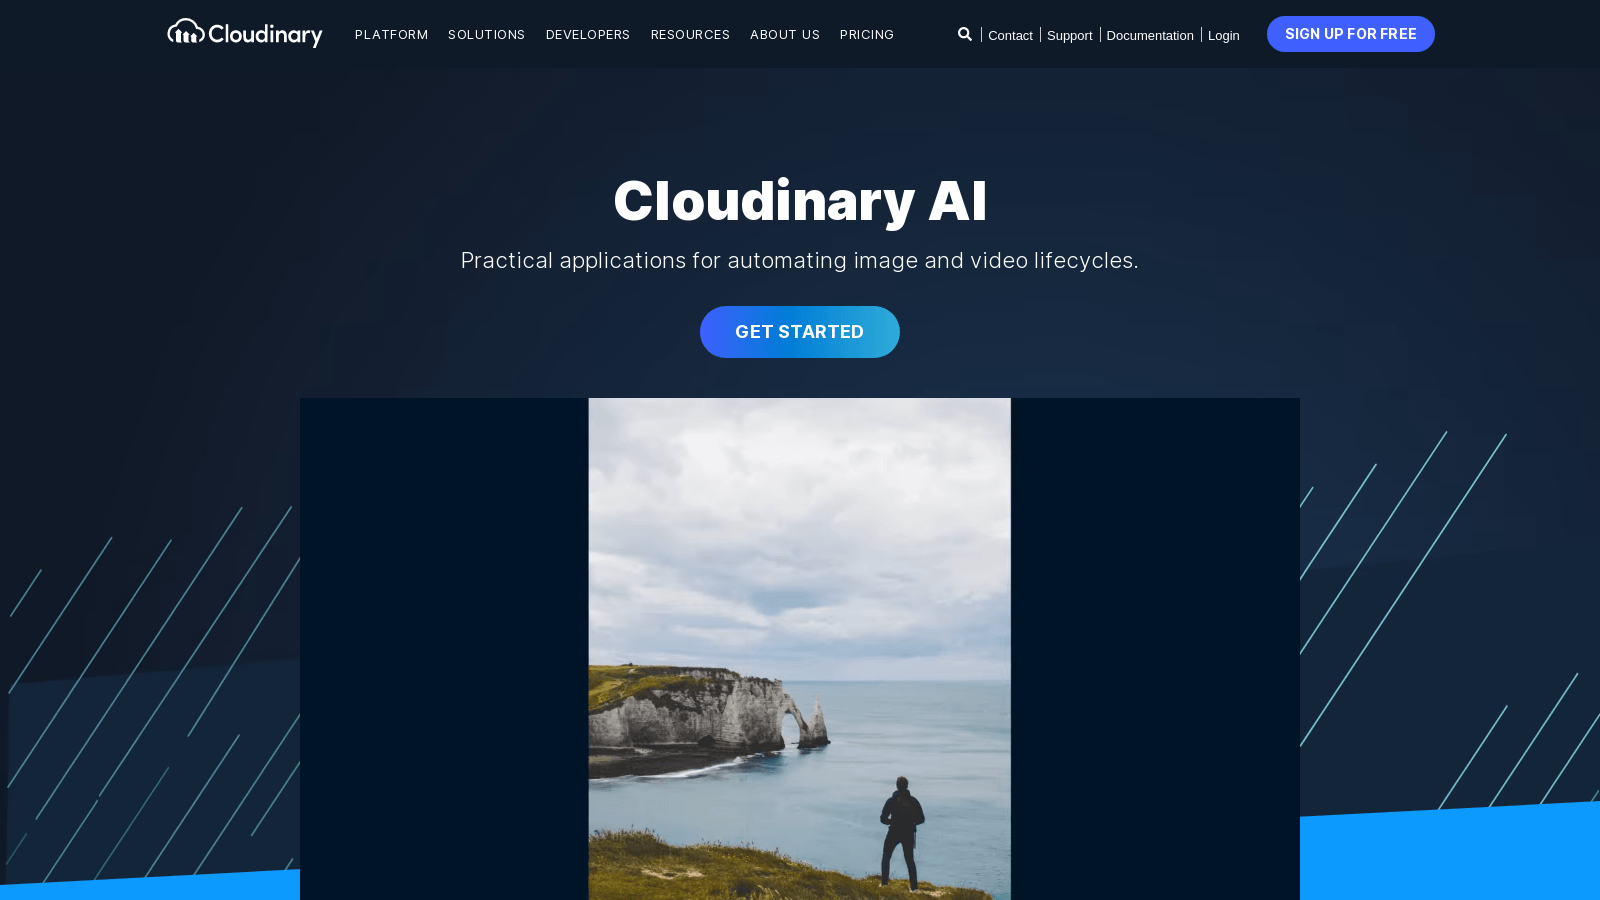 cloudinary.com